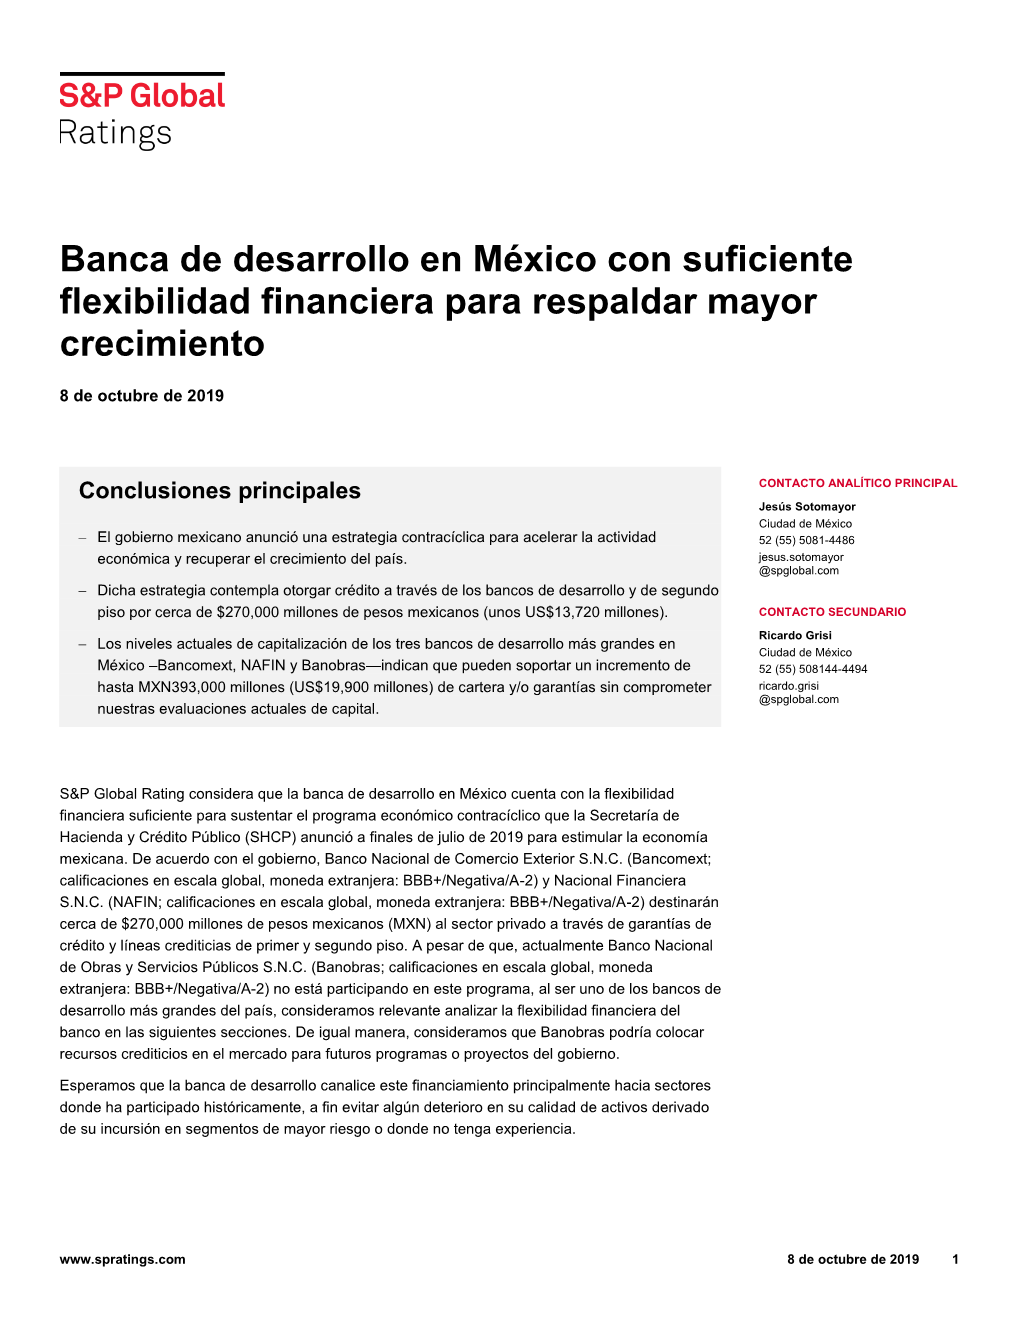 Banca De Desarrollo En México Con Suficiente Flexibilidad Financiera Para Respaldar Mayor Crecimiento